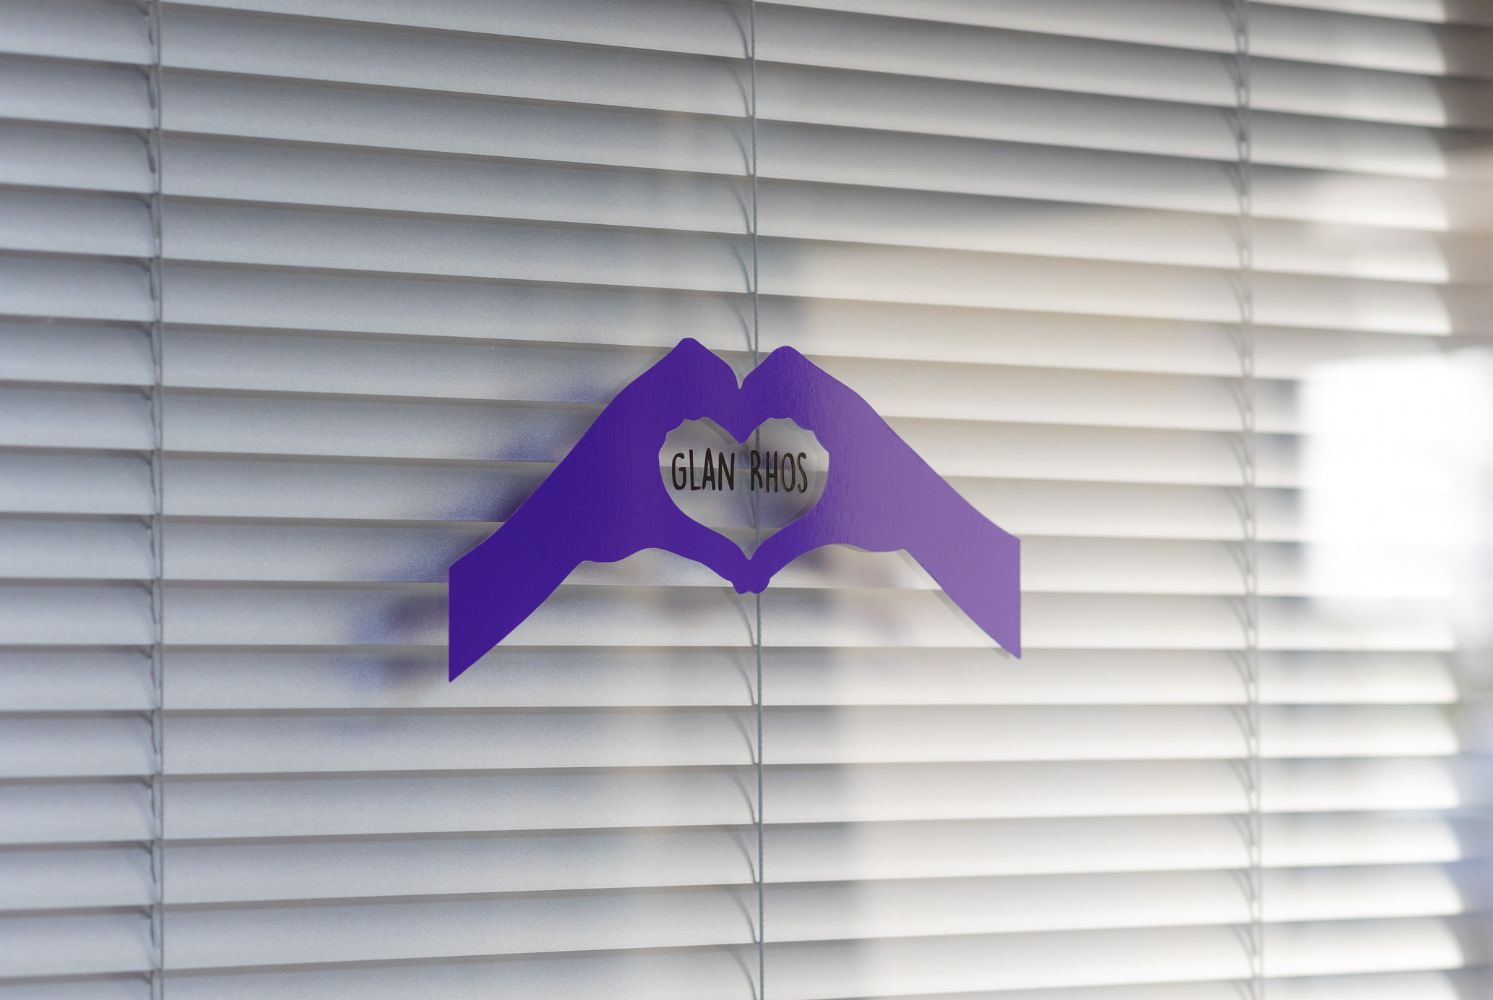 Glan Rhos heart logo in purple